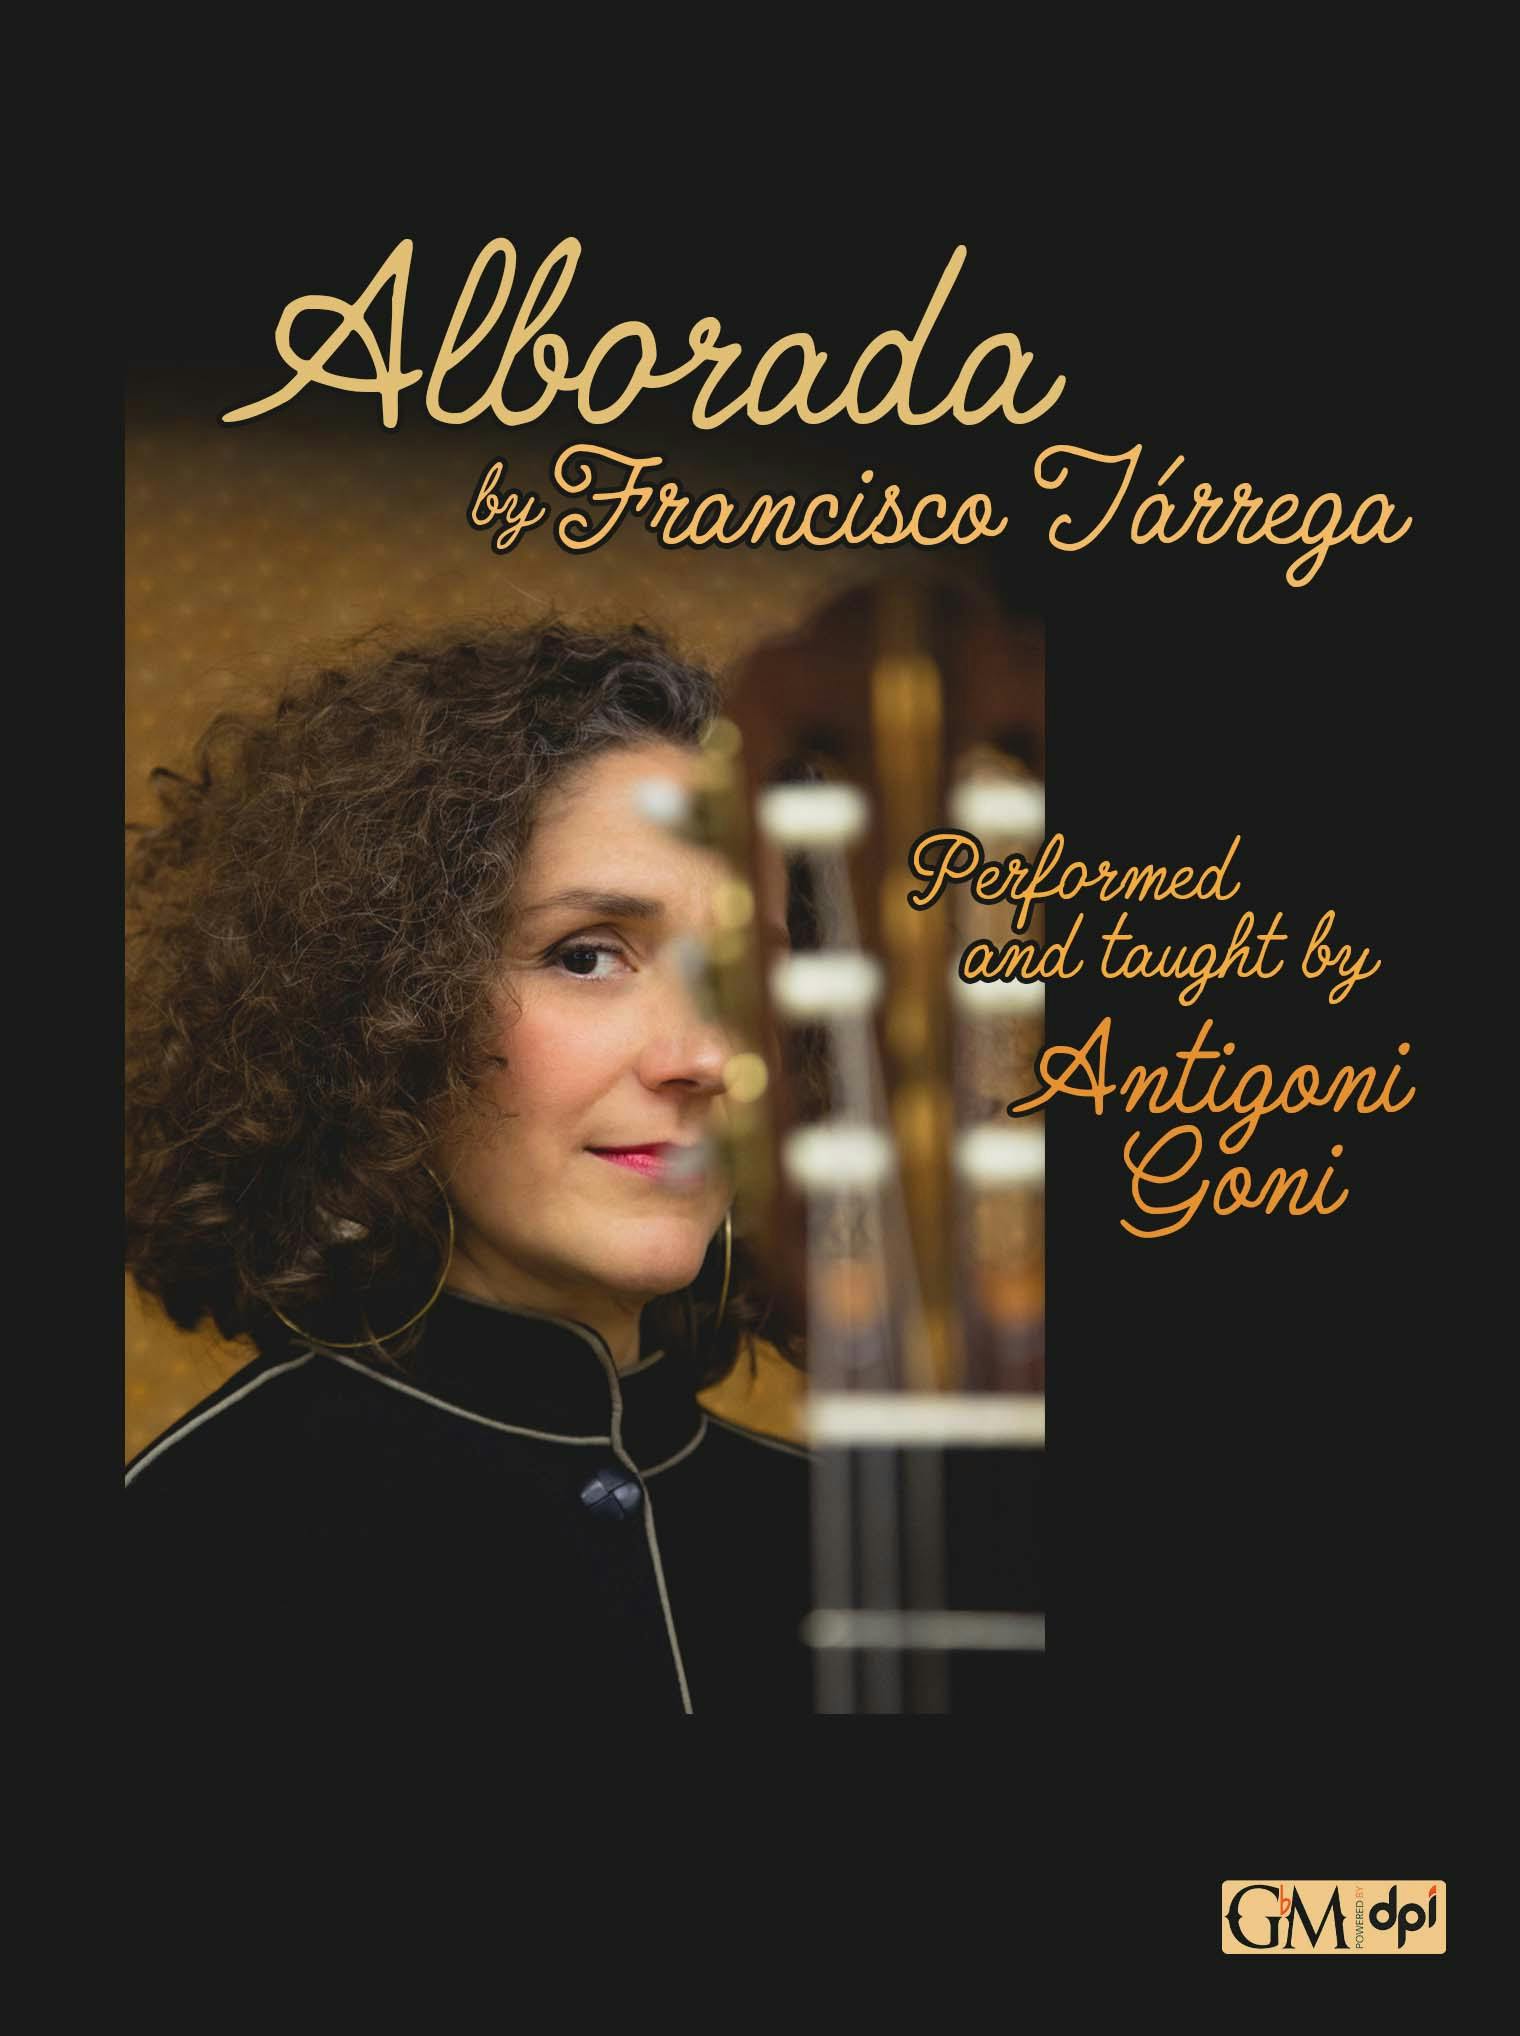 Alborada cover